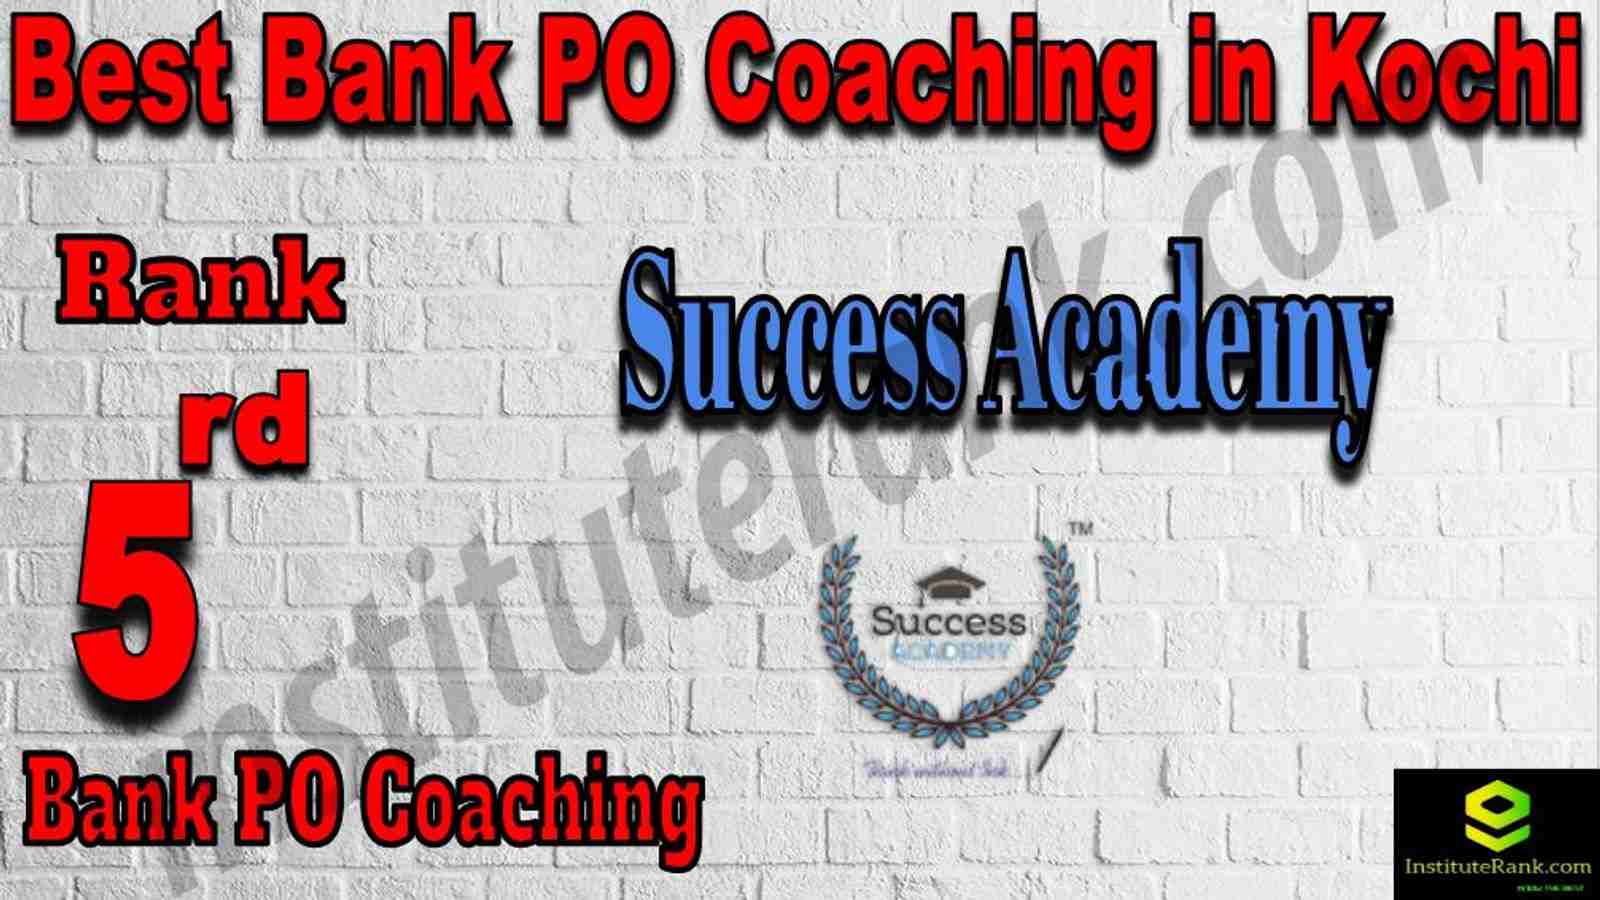 5th Best Bank PO Coaching in Kochi